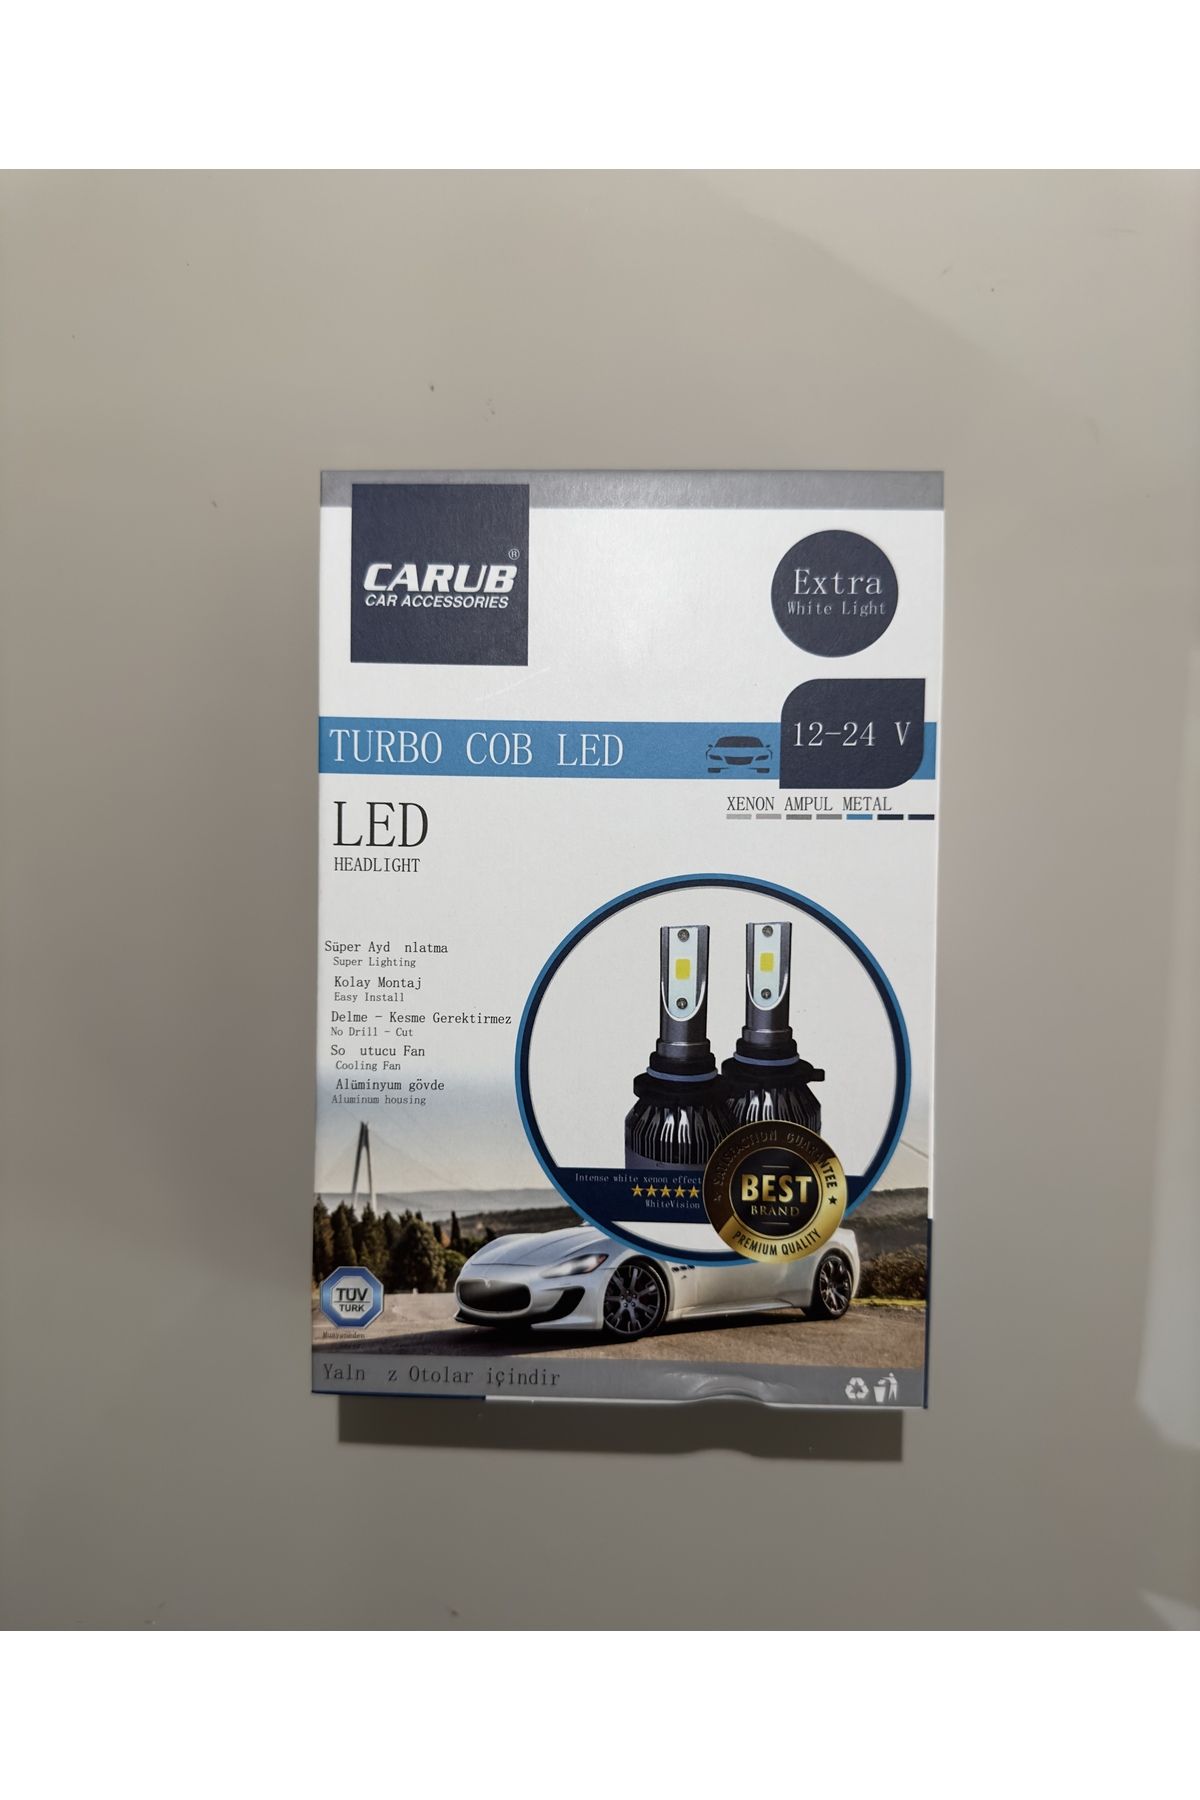 Carub TURBO COB LED XENON LED (H11) 12-24V